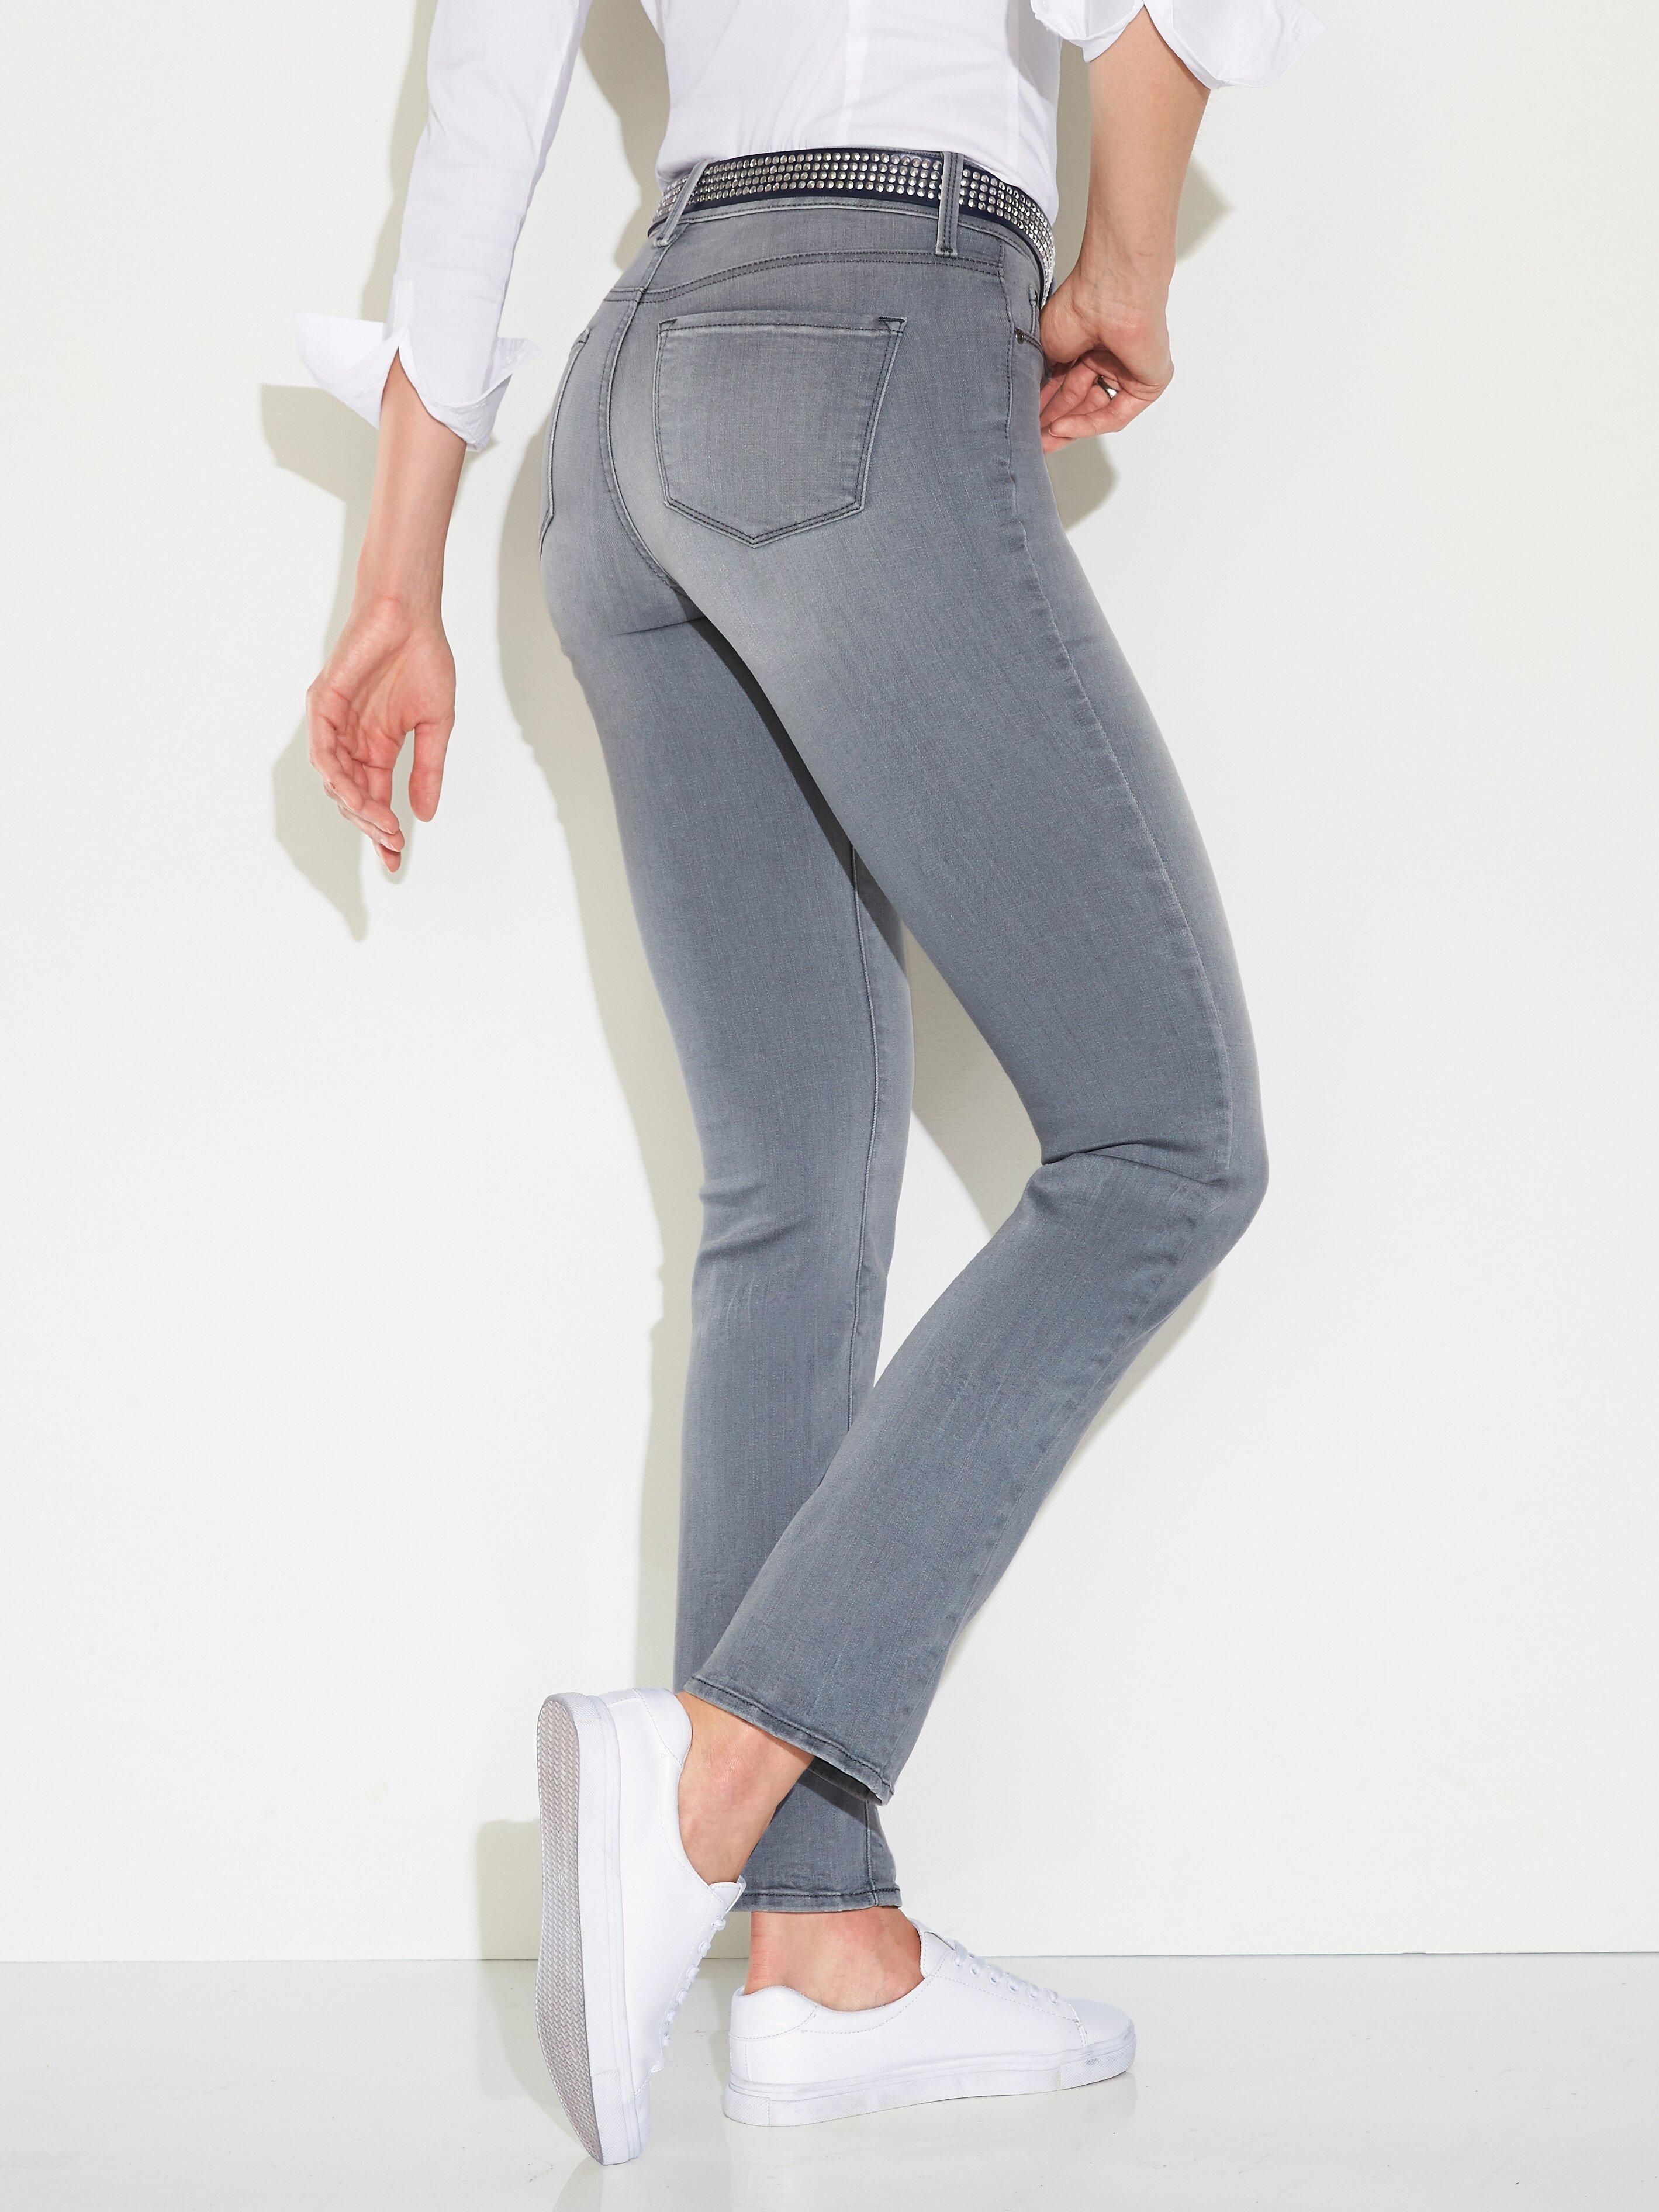 NYDJ - Jeans Sheri Slim inchlengte 31